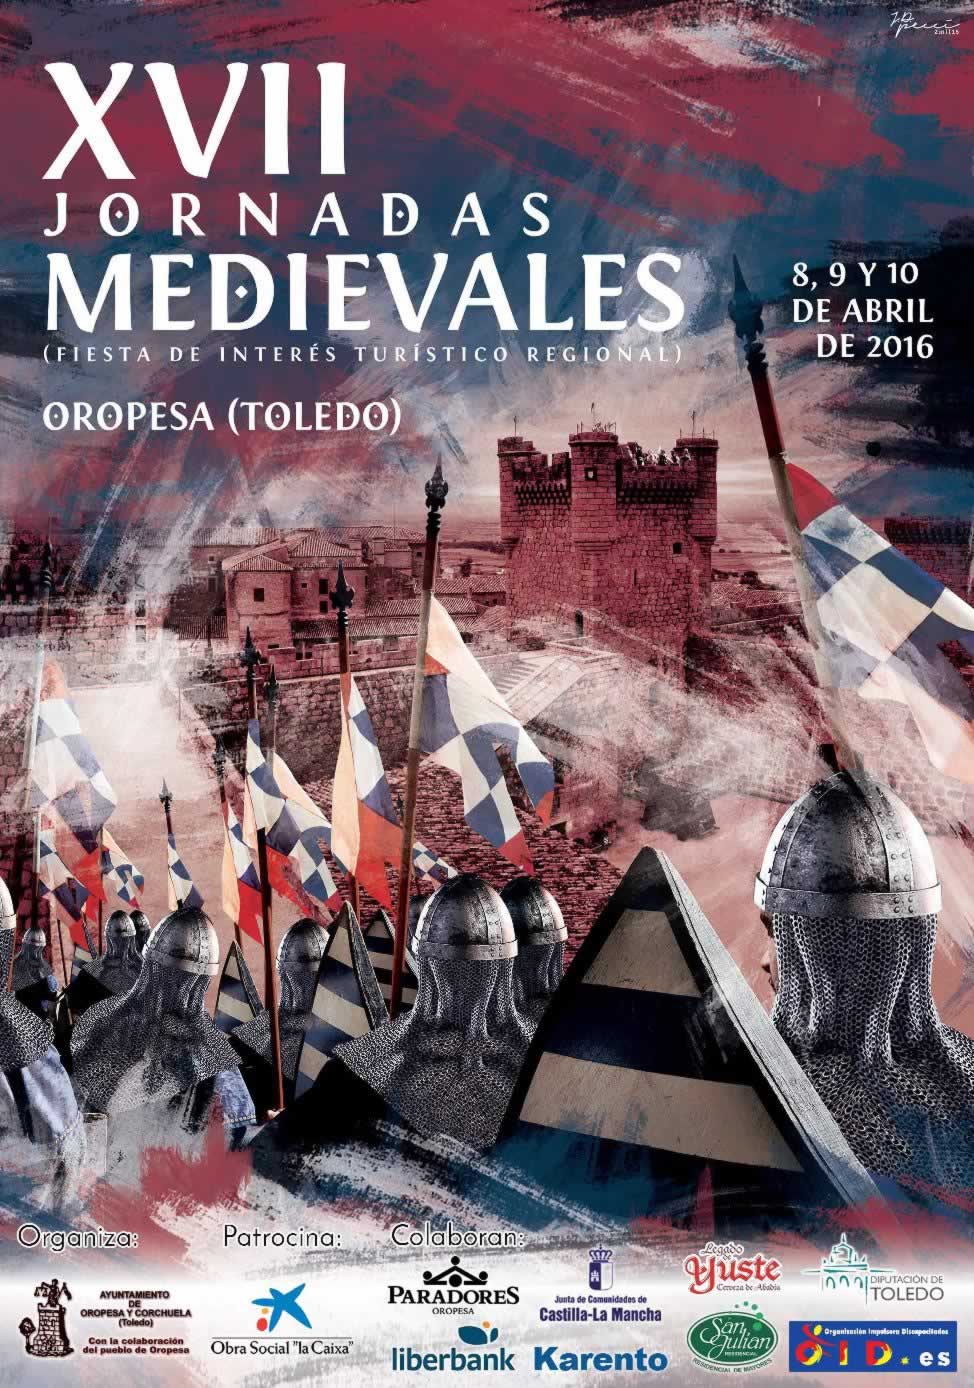 Programa completo de las Jornadas medievales de Oropesa, Toledo del 08 al 10 de Abril del 2016